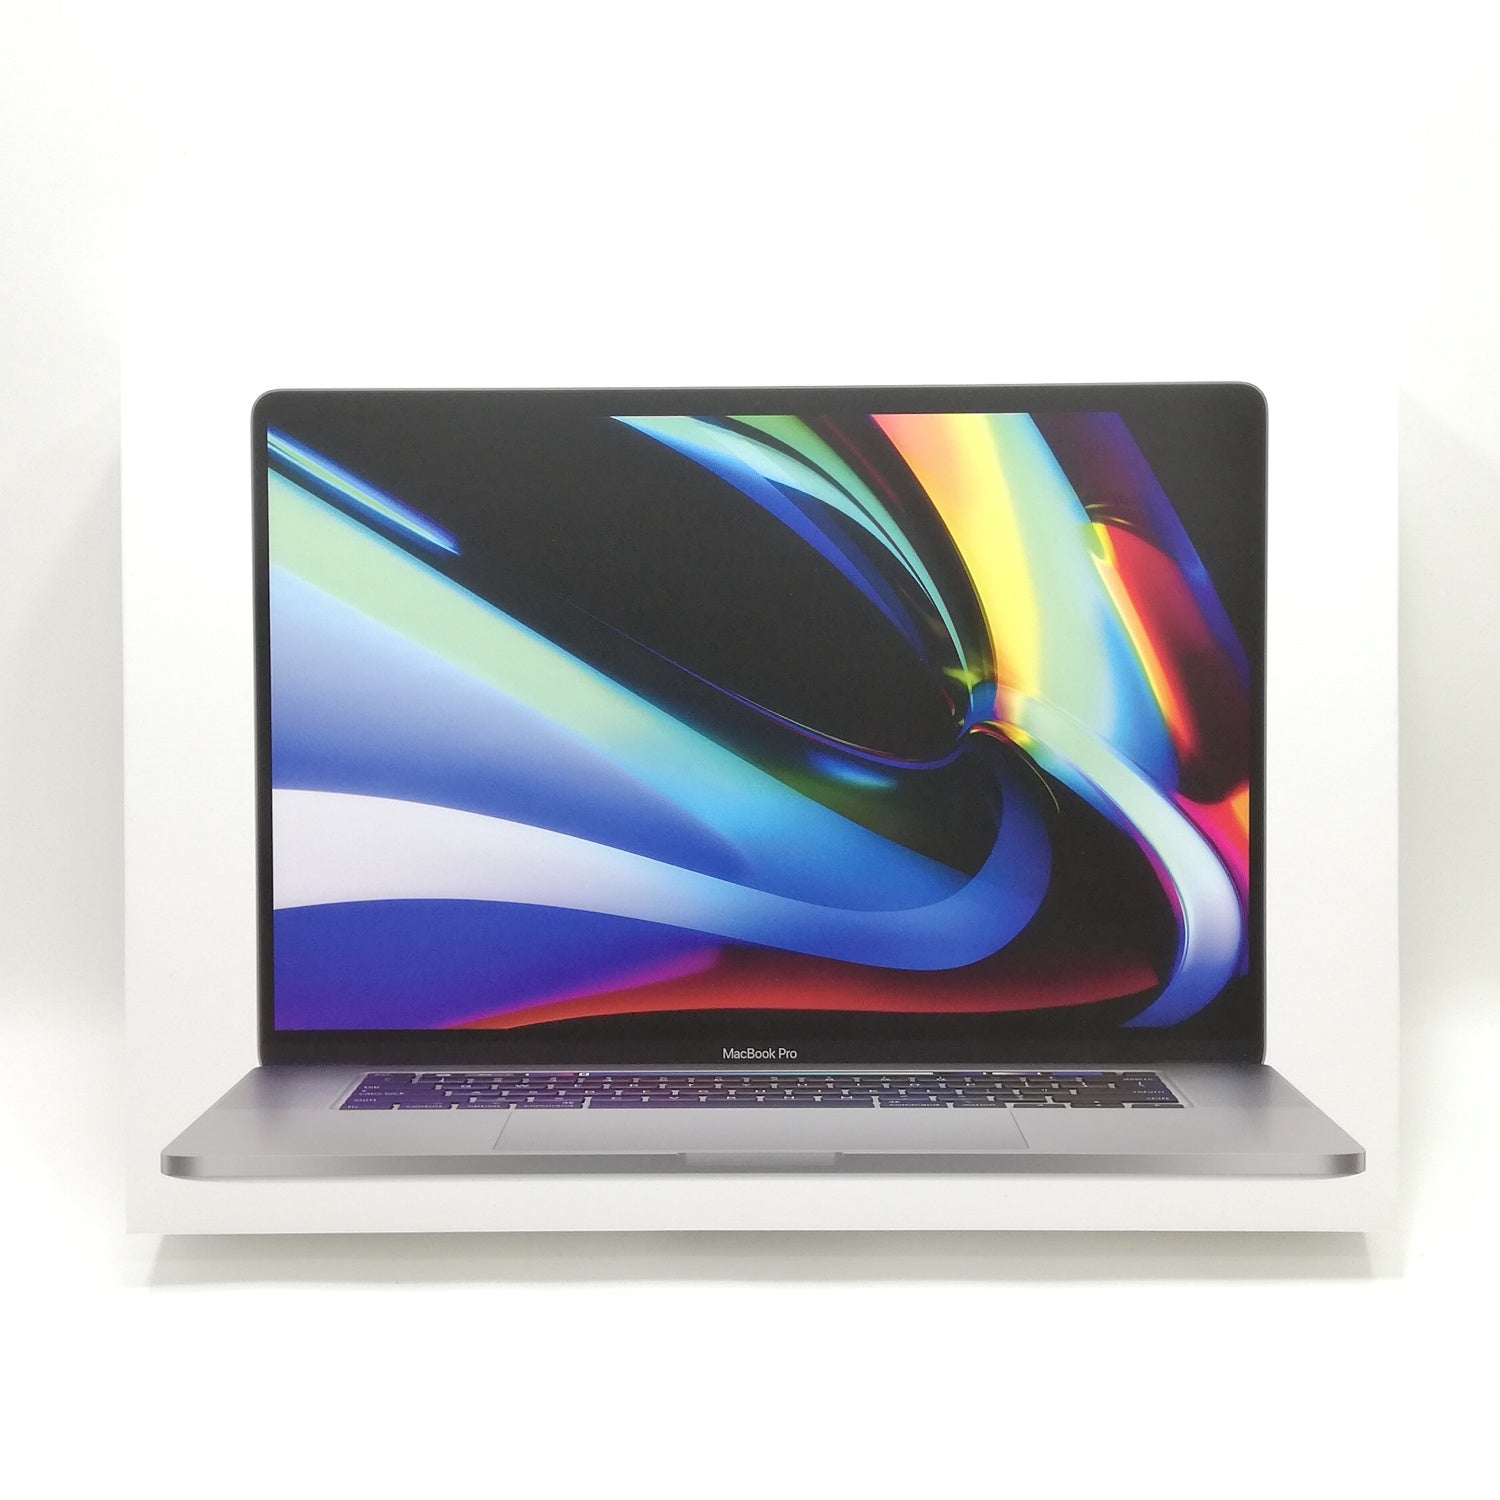 すでにお安く出品していますしMacBook Pro 2019 32GB 1TB Touch Bar